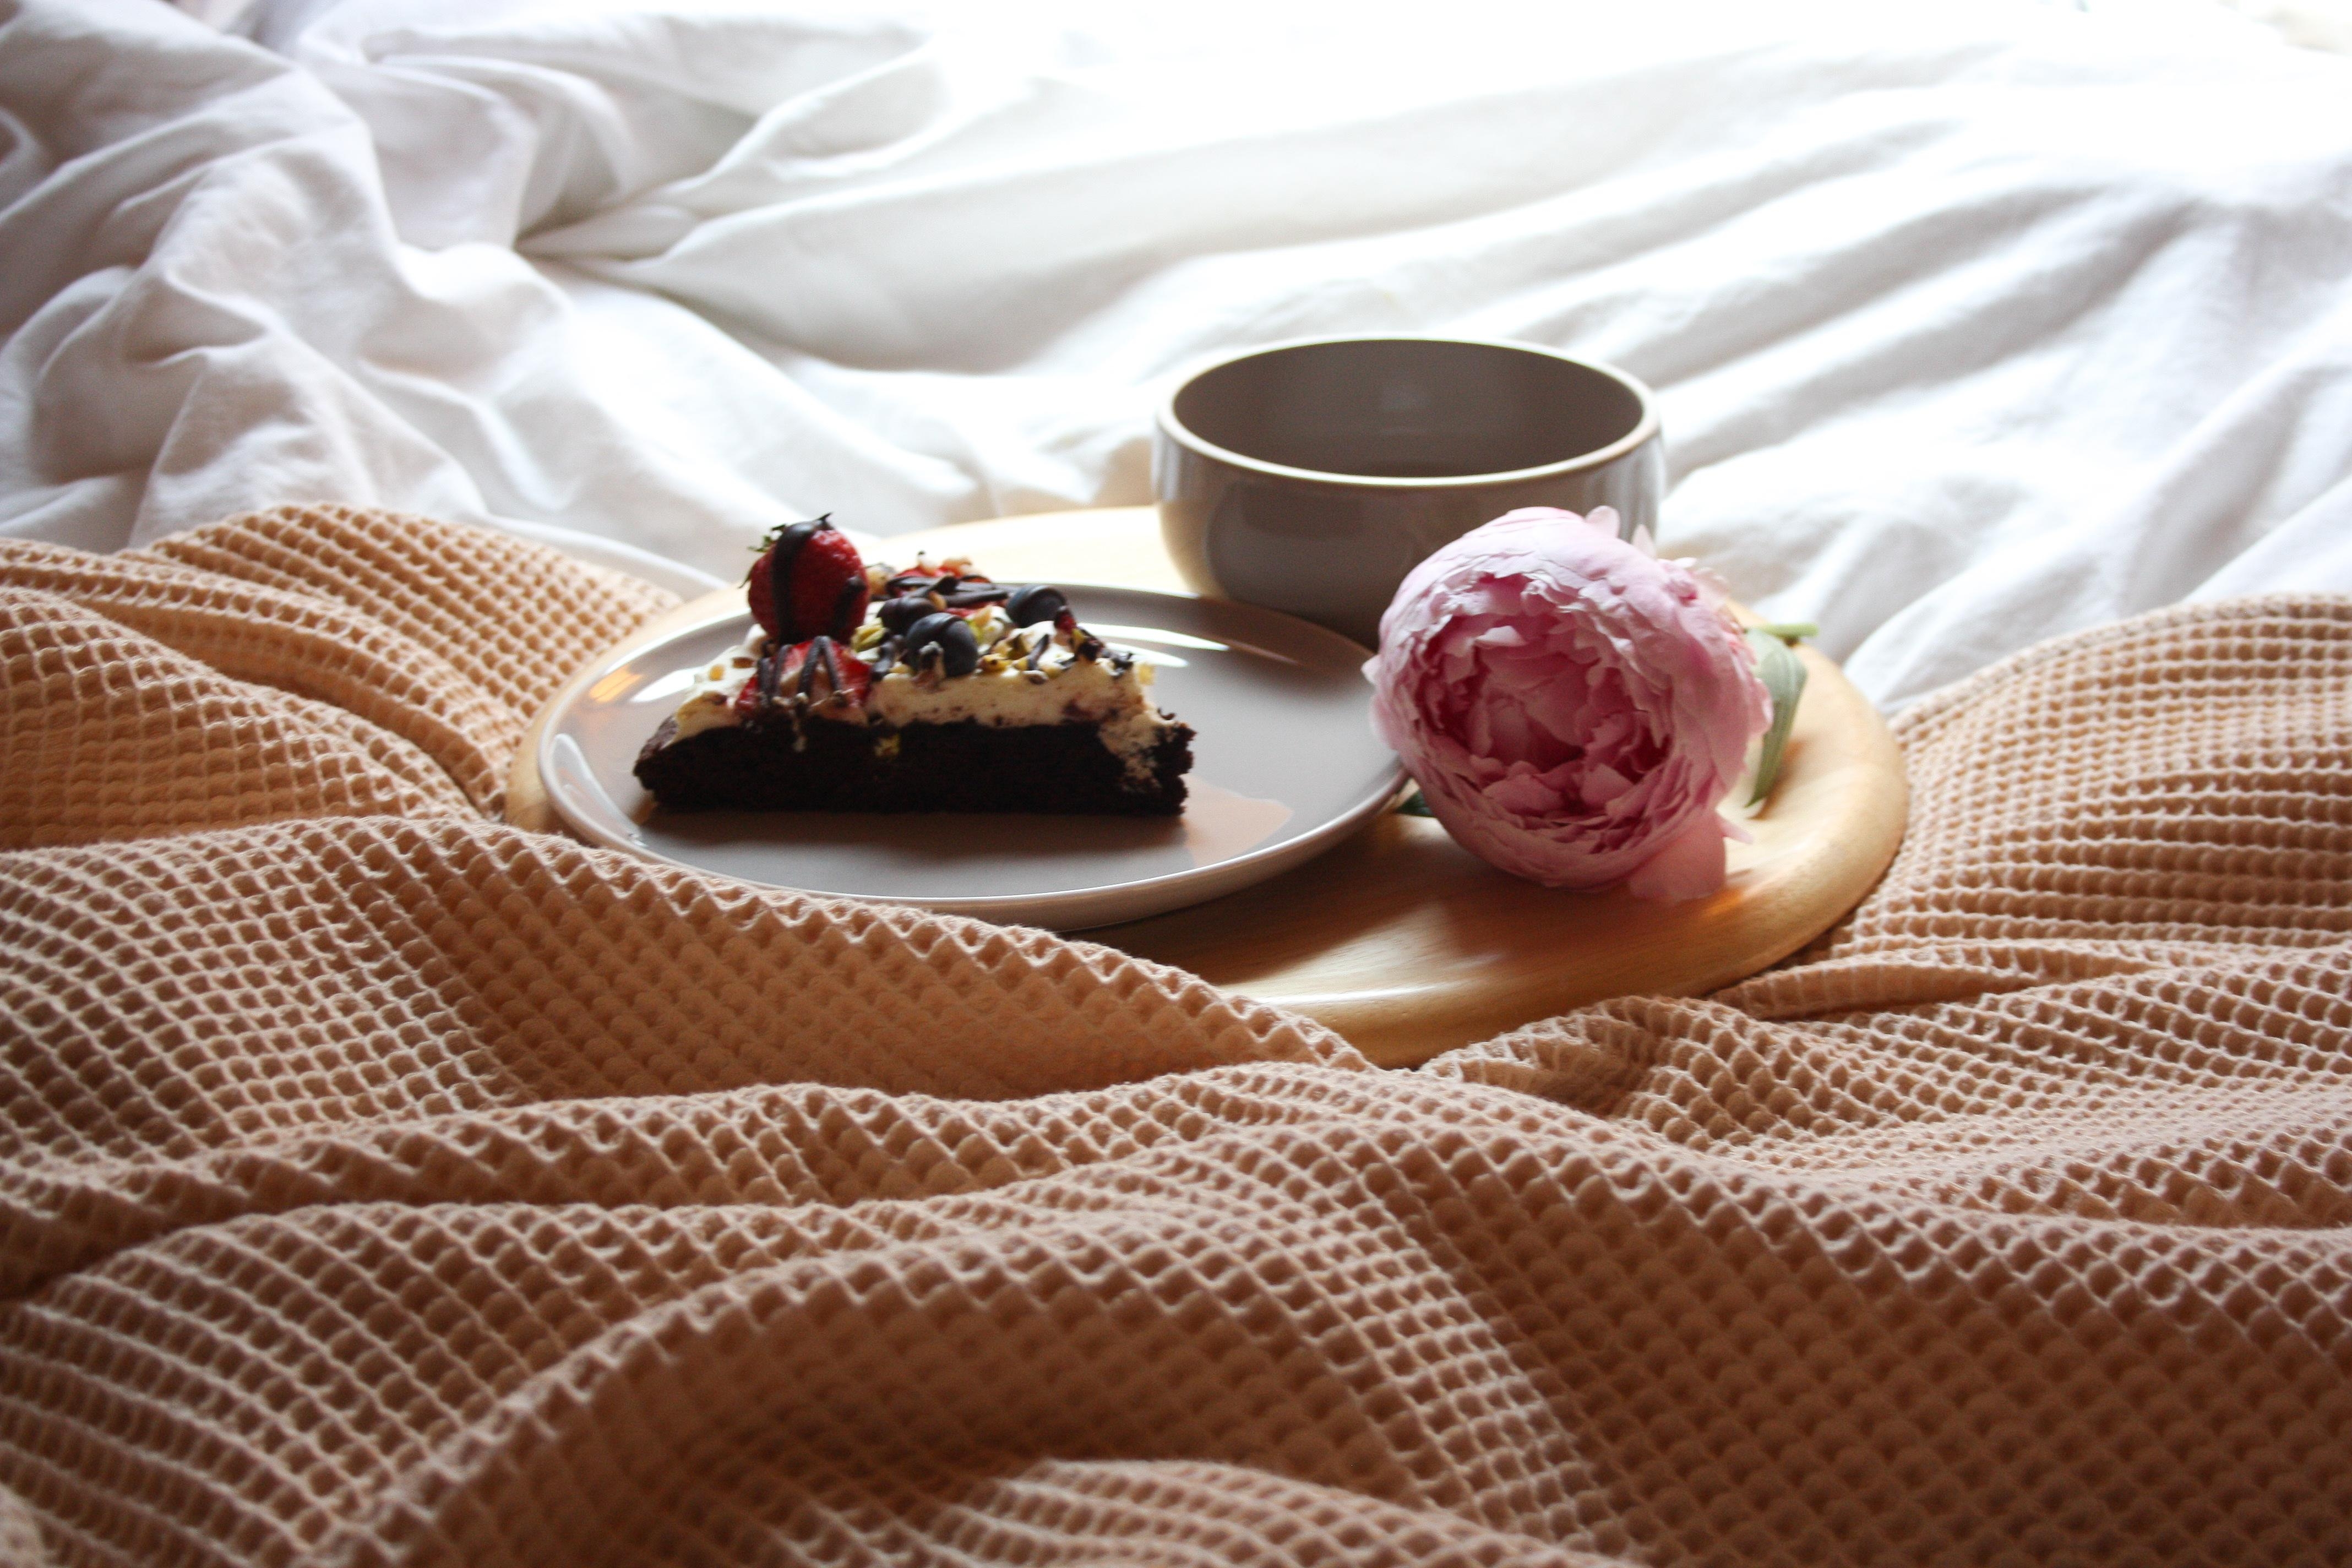 ♡ Guten Morgen ♡

#schlafzimmer #livingchallenge #coffee #frühstück #cake #backen 